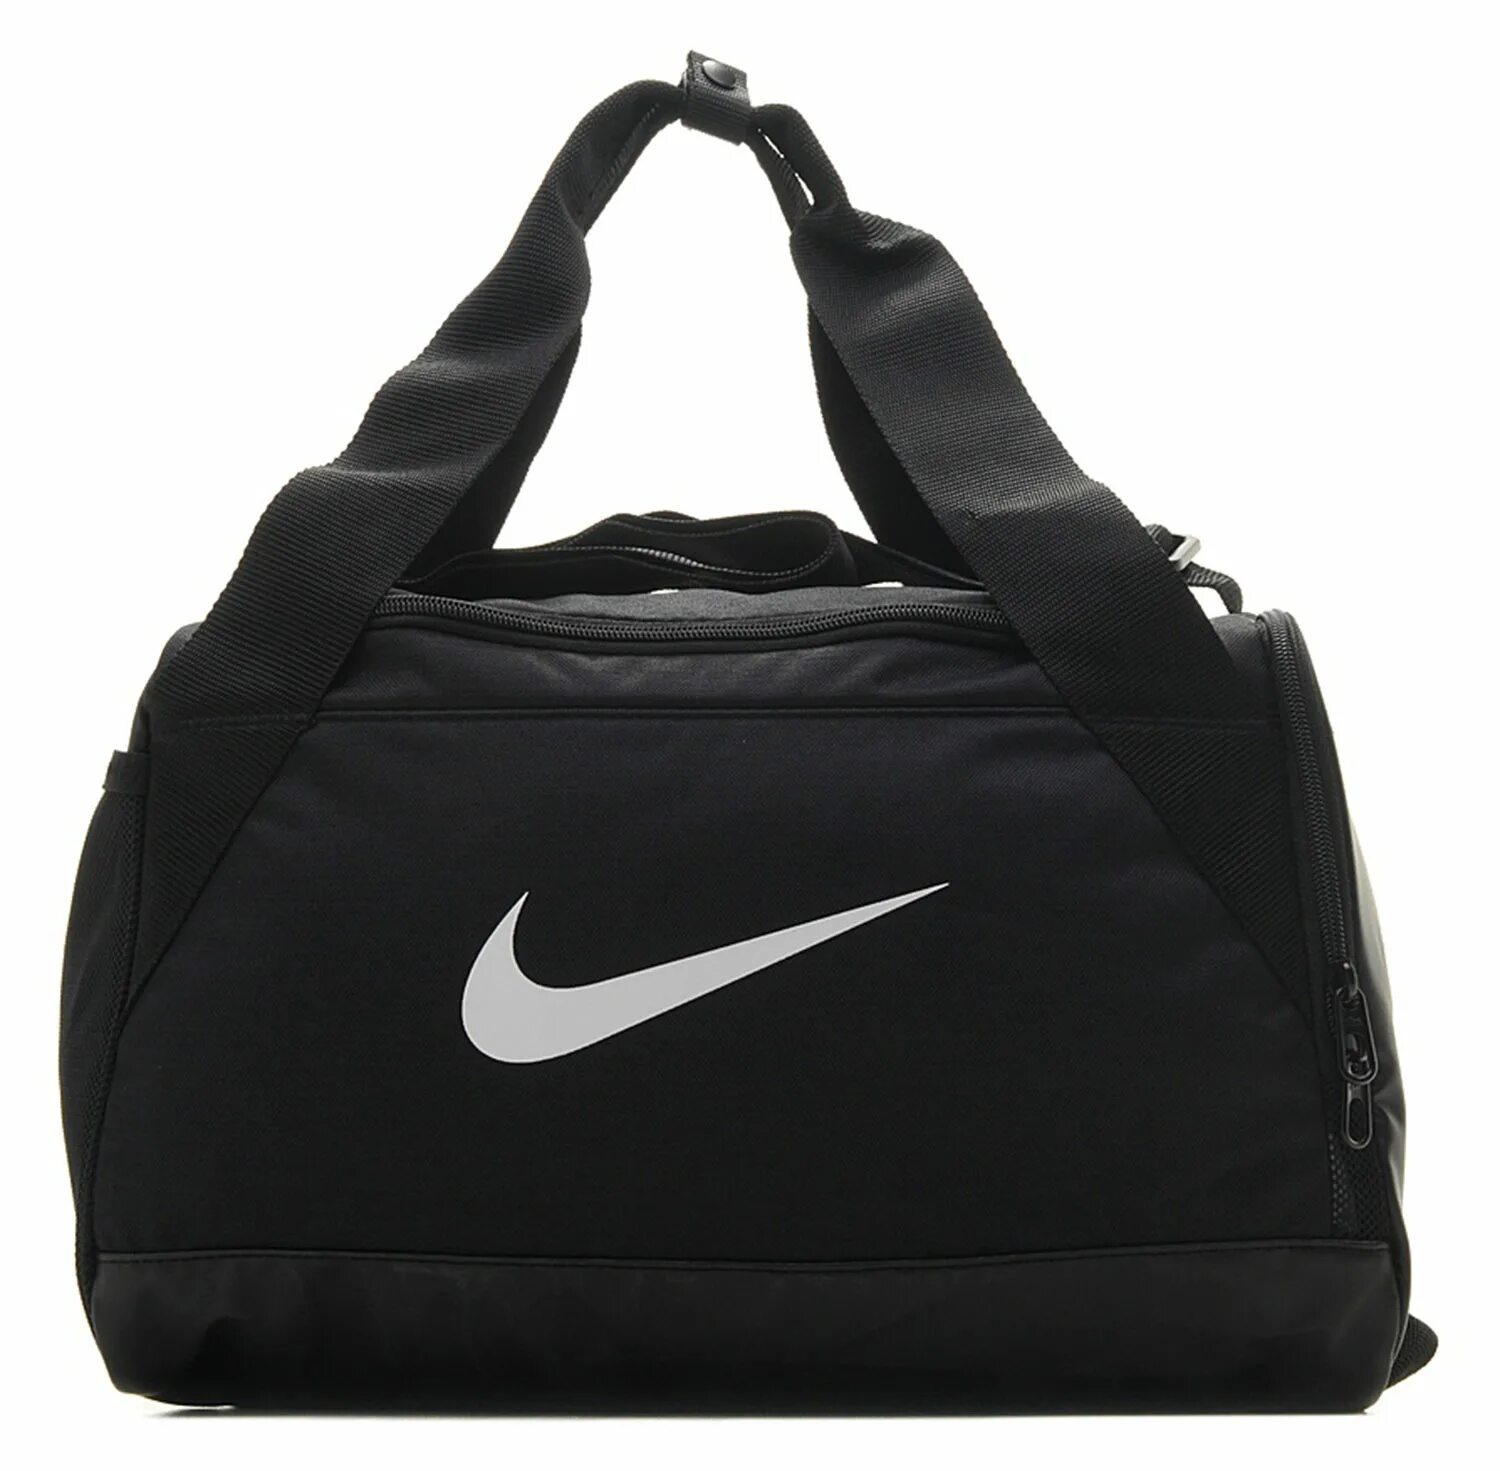 Сумка Nike Brasilia Duffel. Сумка спортивная Nike NK BRSLA XS Duff. Спортивная сумка найк мужская. Найк бэг черный.